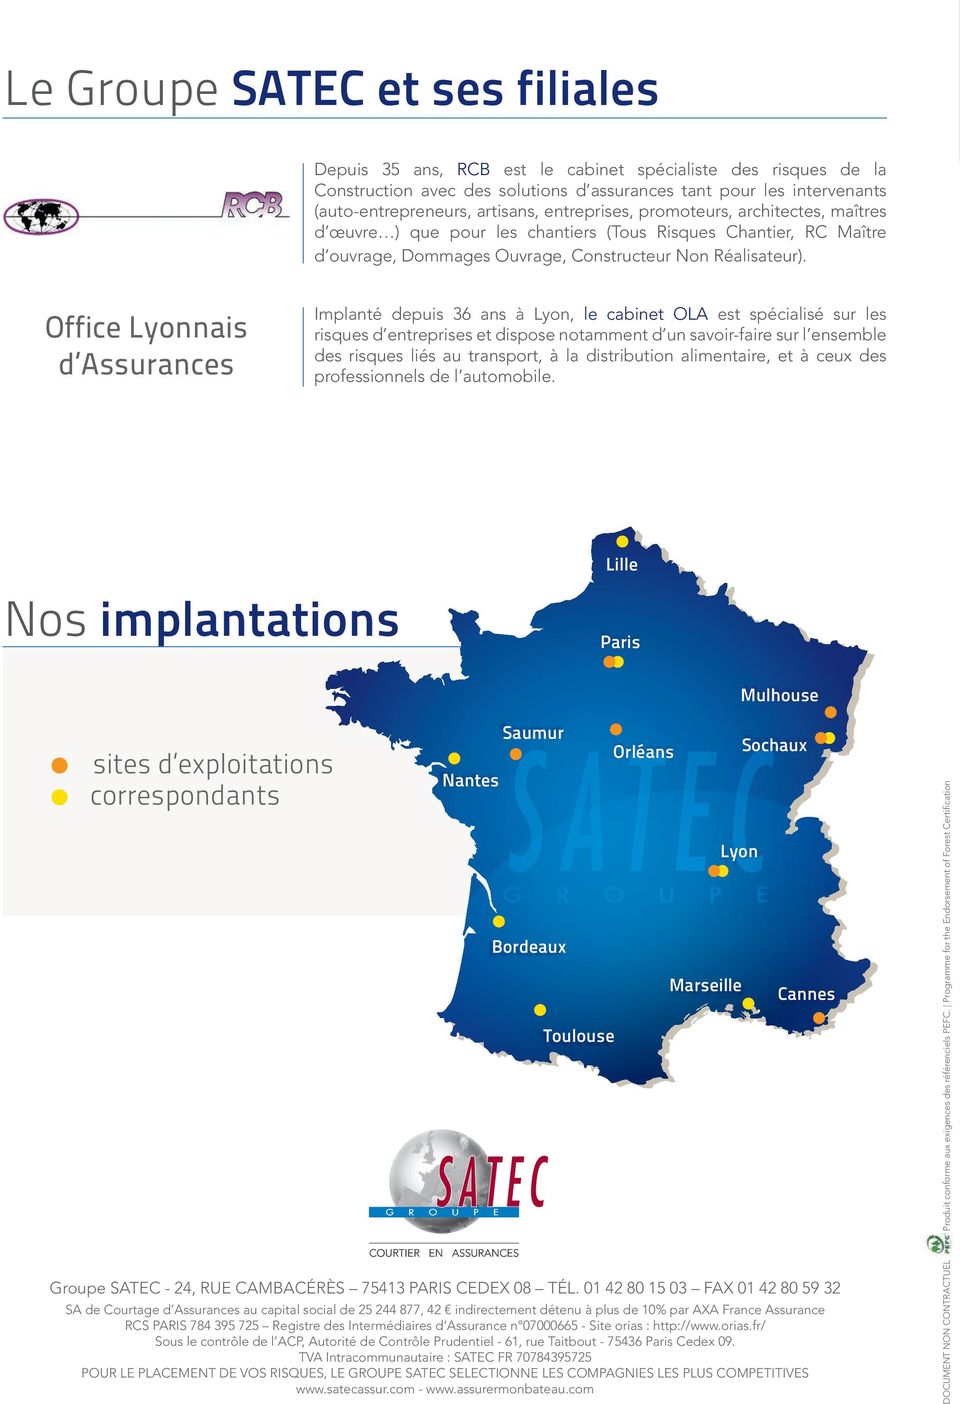 Office Lyonnais d Assurances Implanté depuis 36 ans à Lyon, le cabinet OLA est spécialisé sur les risques d entreprises et dispose notamment d un savoir-faire sur l ensemble des risques liés au